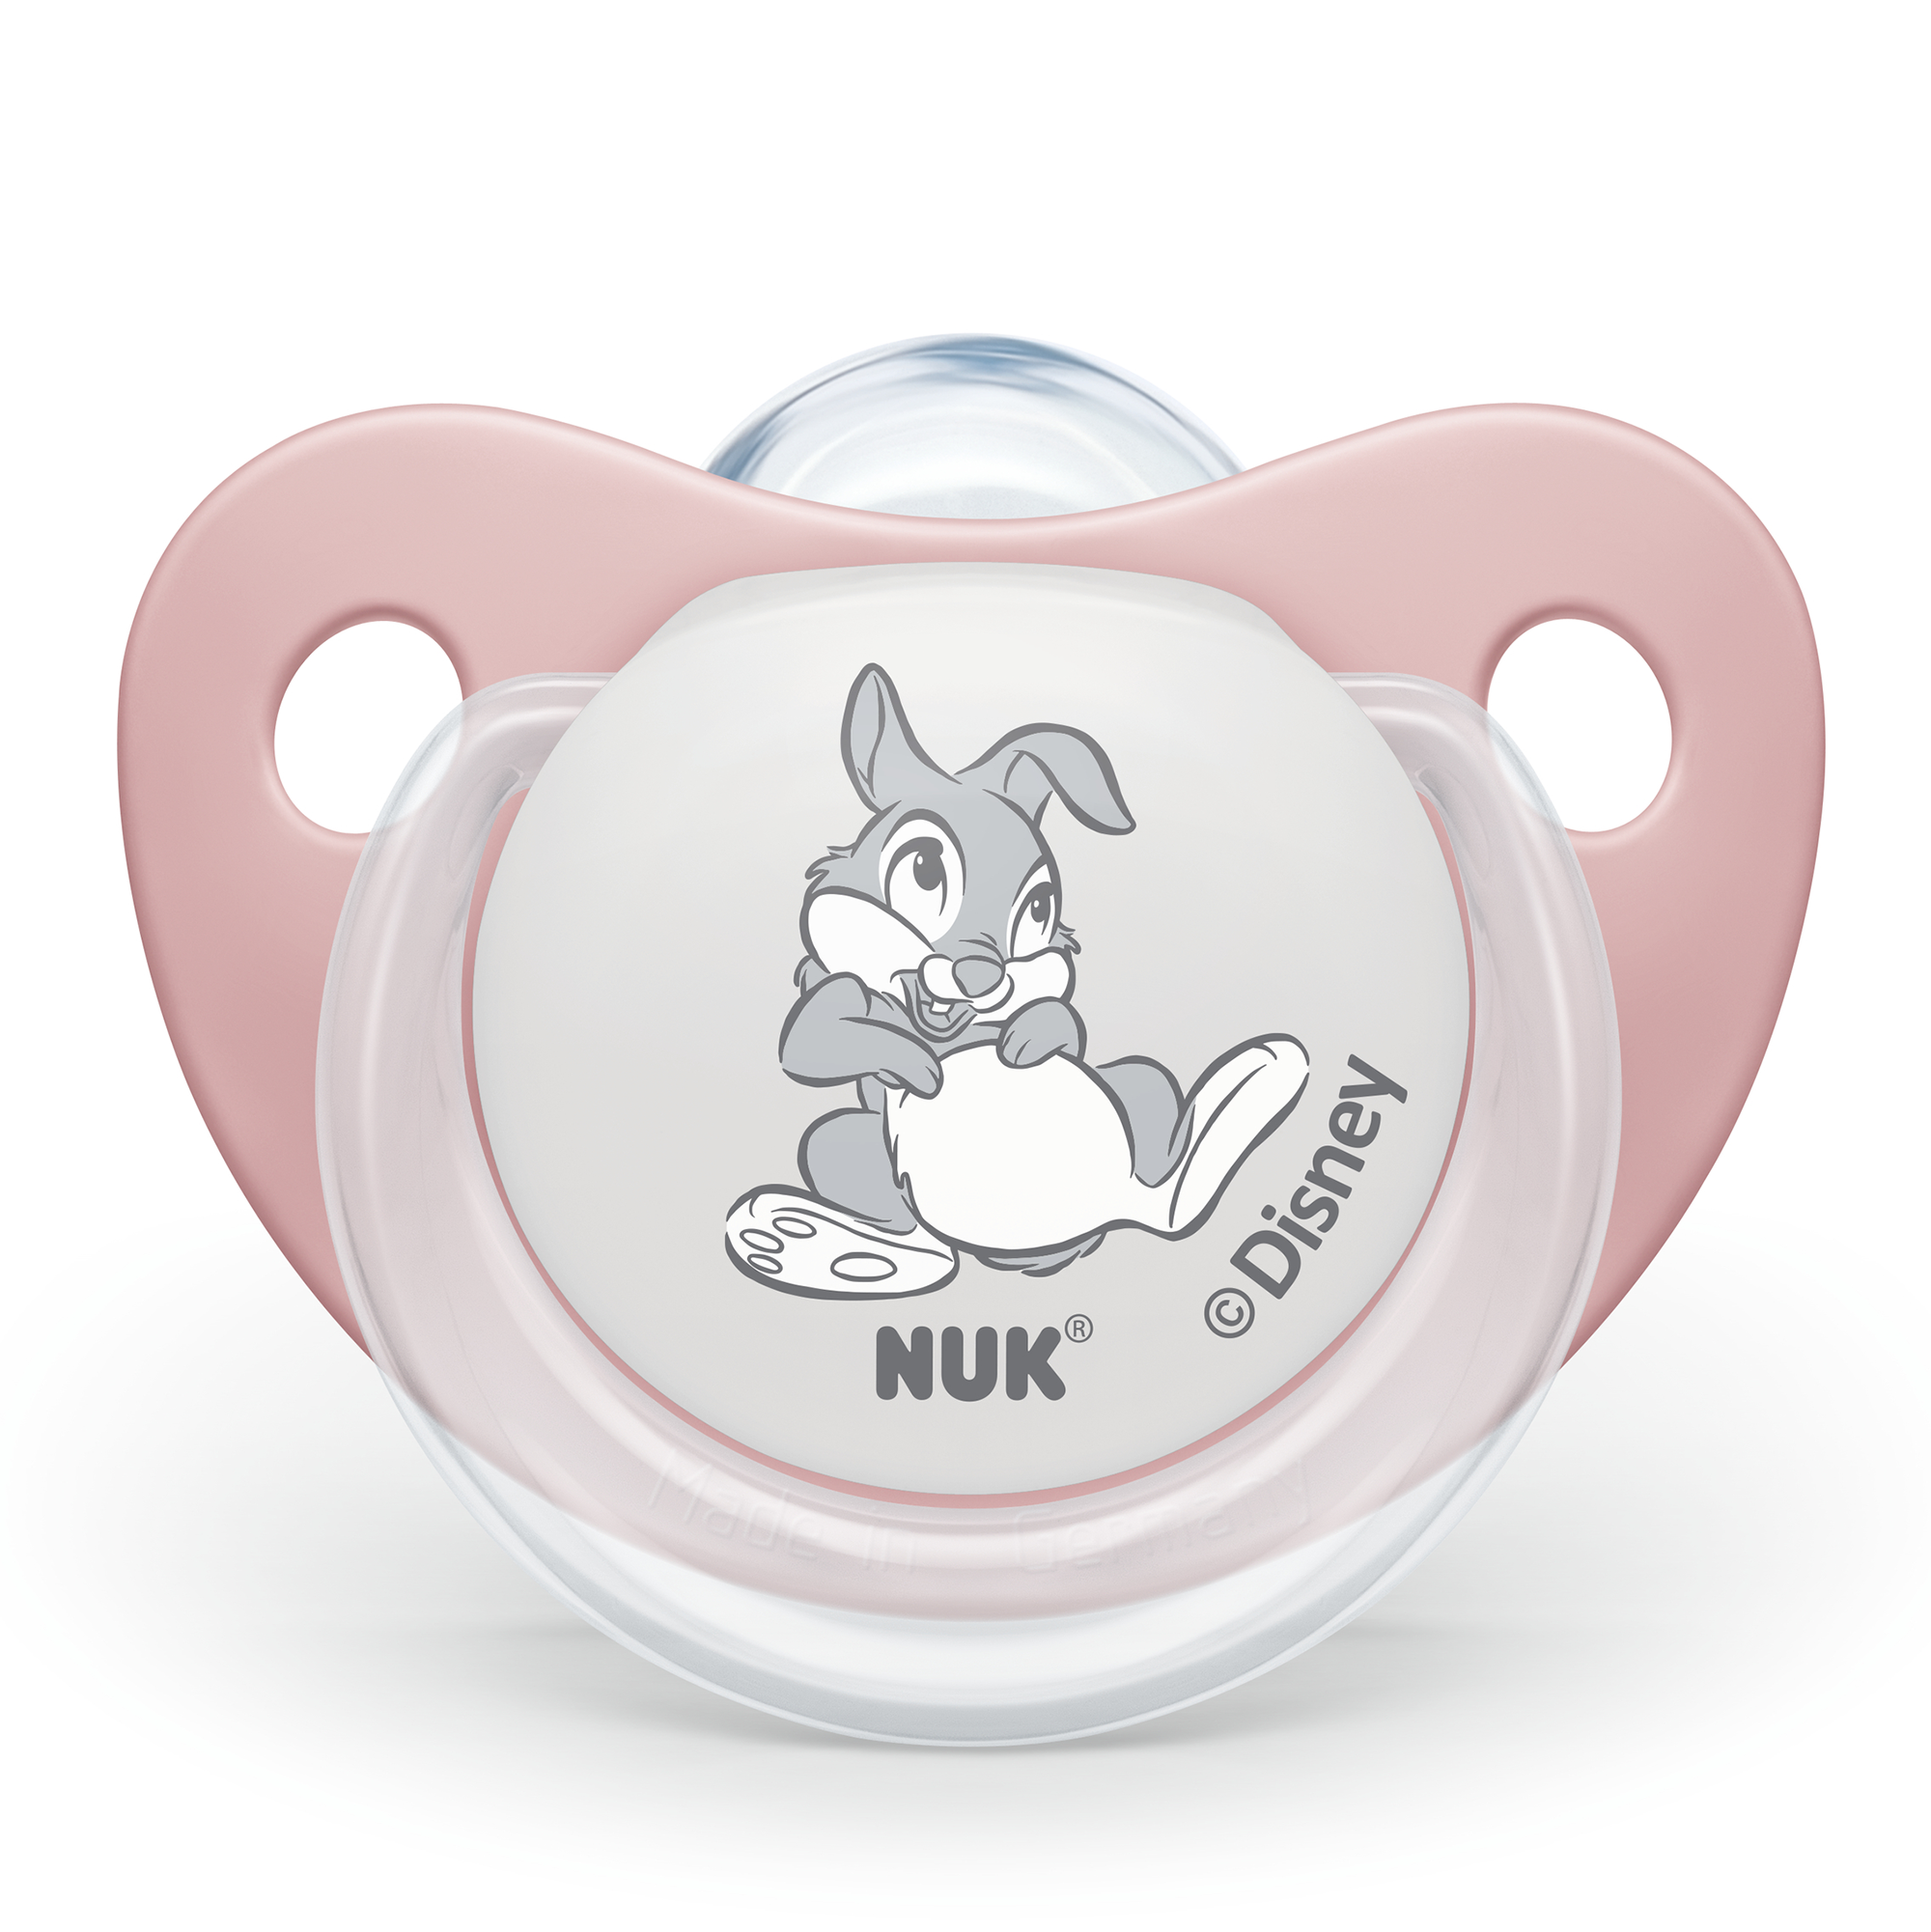 Beruhigungssauger Disney Bambi 0 - 6 Monate NUK Rosa Pink 2000583057307 2